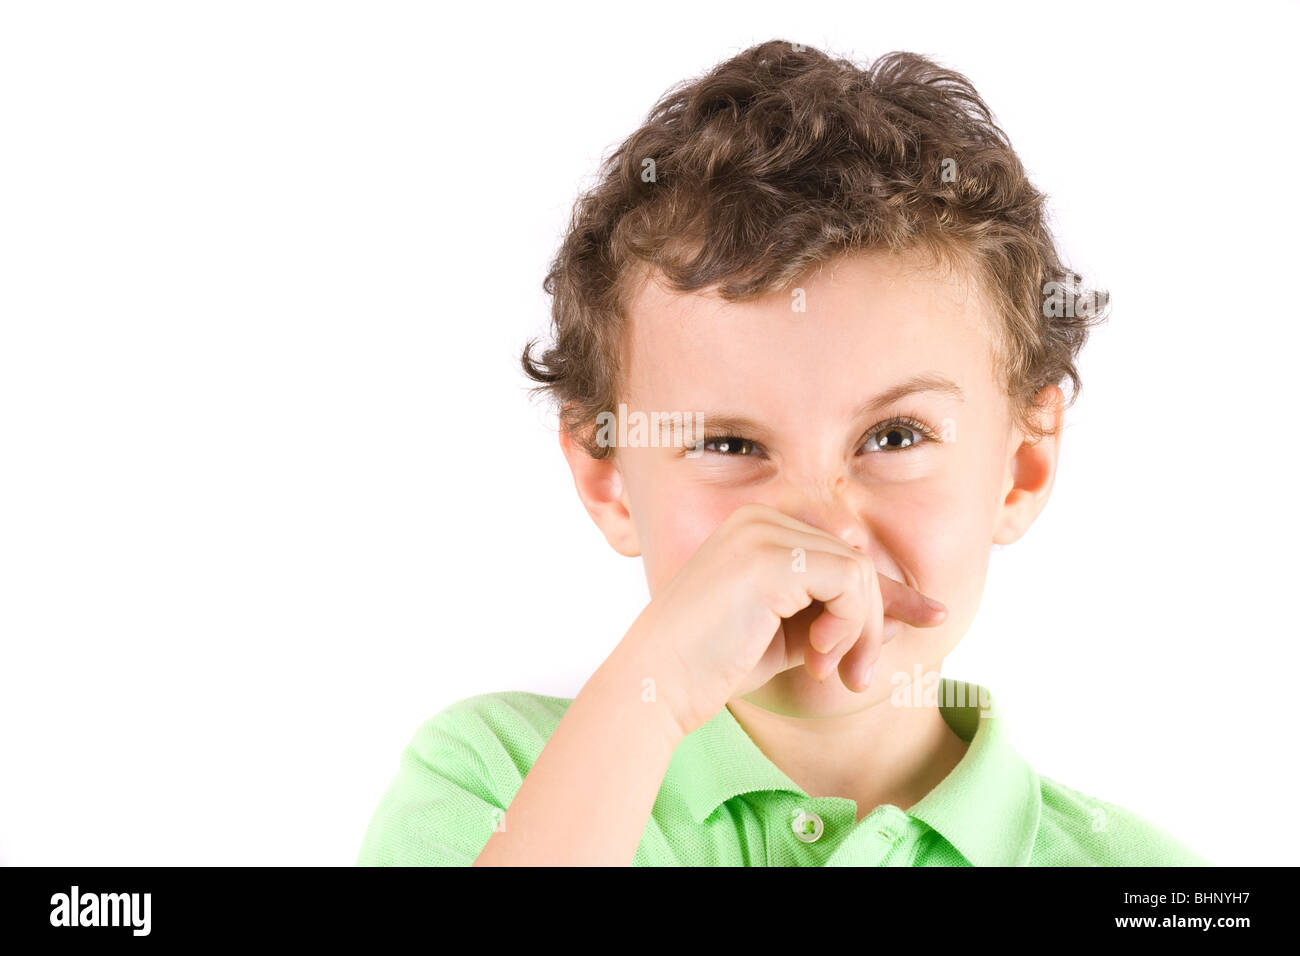 Мальчик воняет. Детям о неприятных запахах. Мальчик вытирает нос рукавом. Плохо пахнет мальчик.